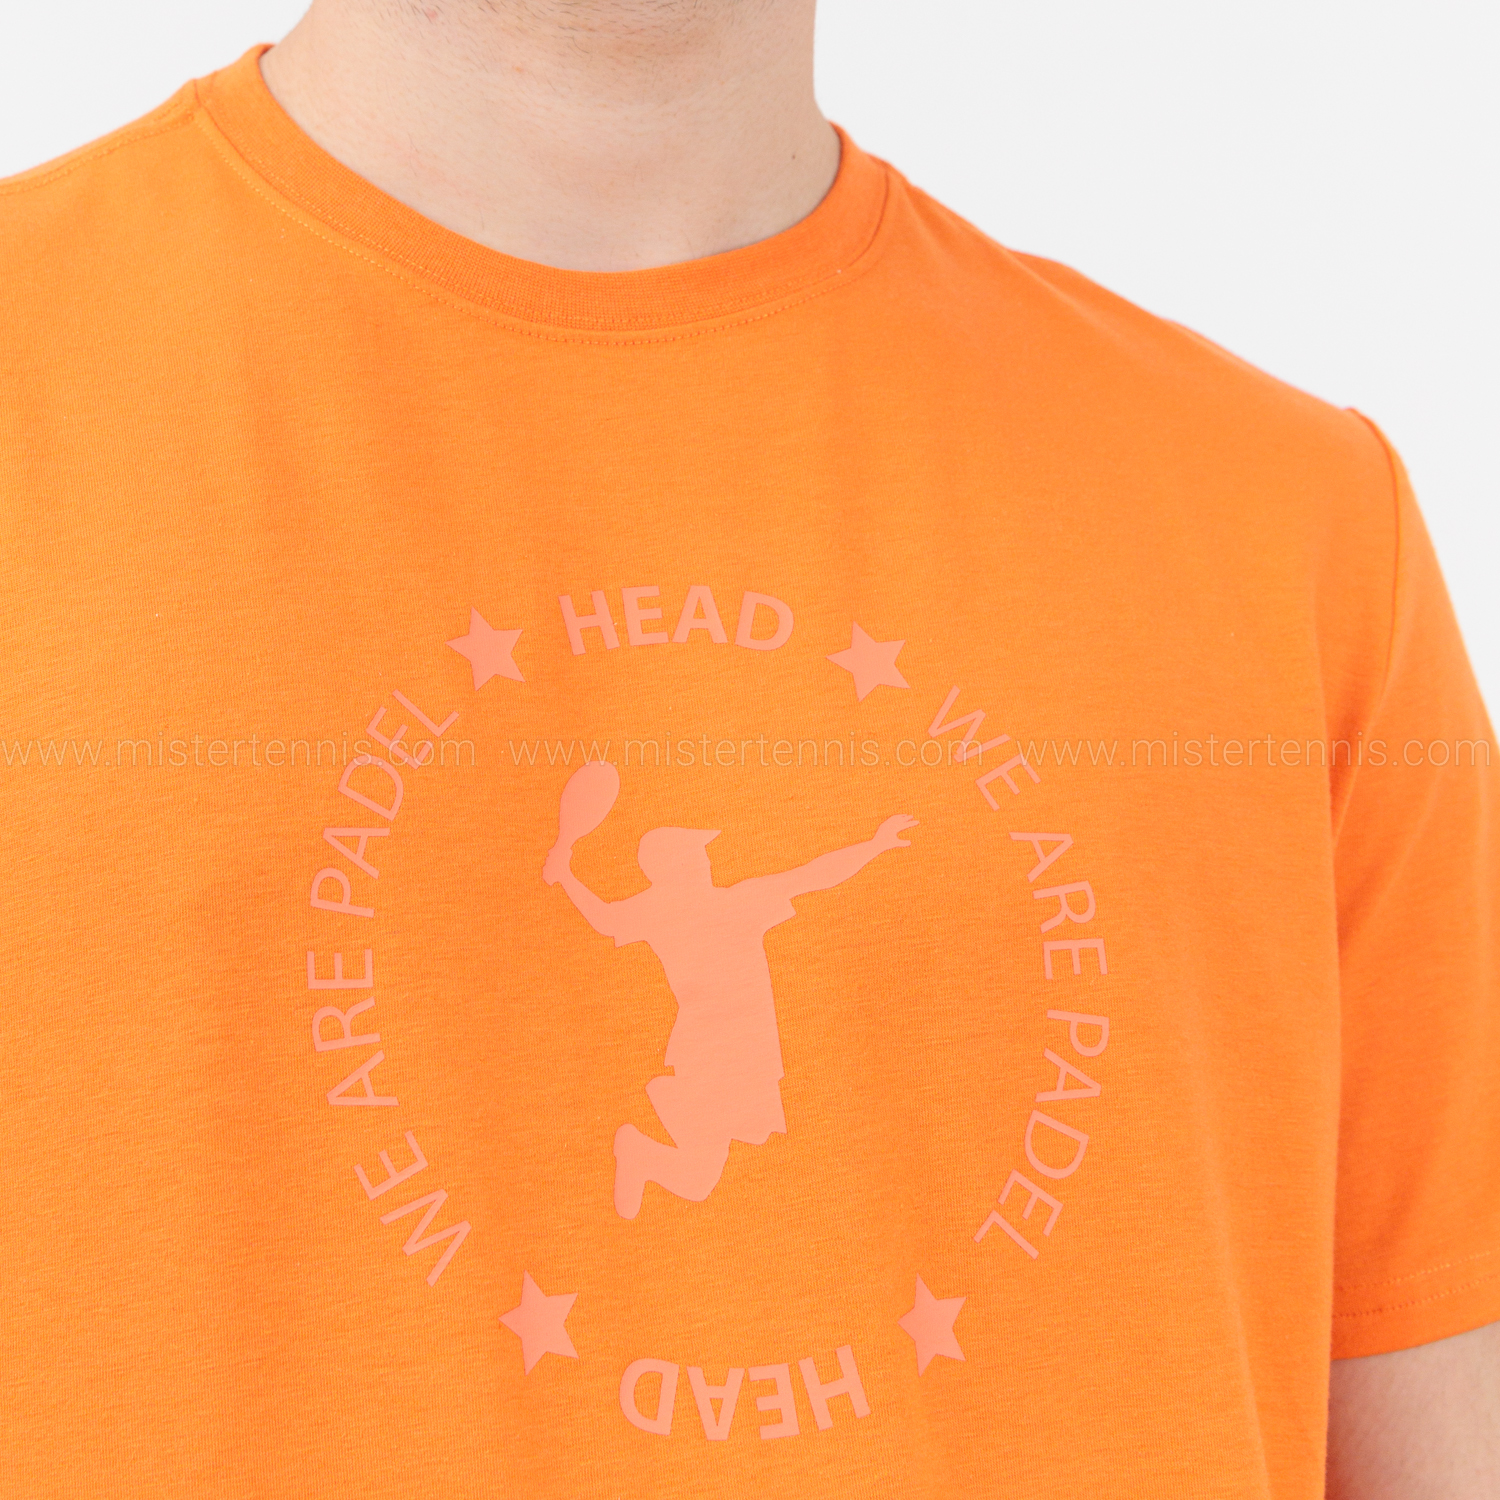 Head Graphic Logo Maglietta - Orange